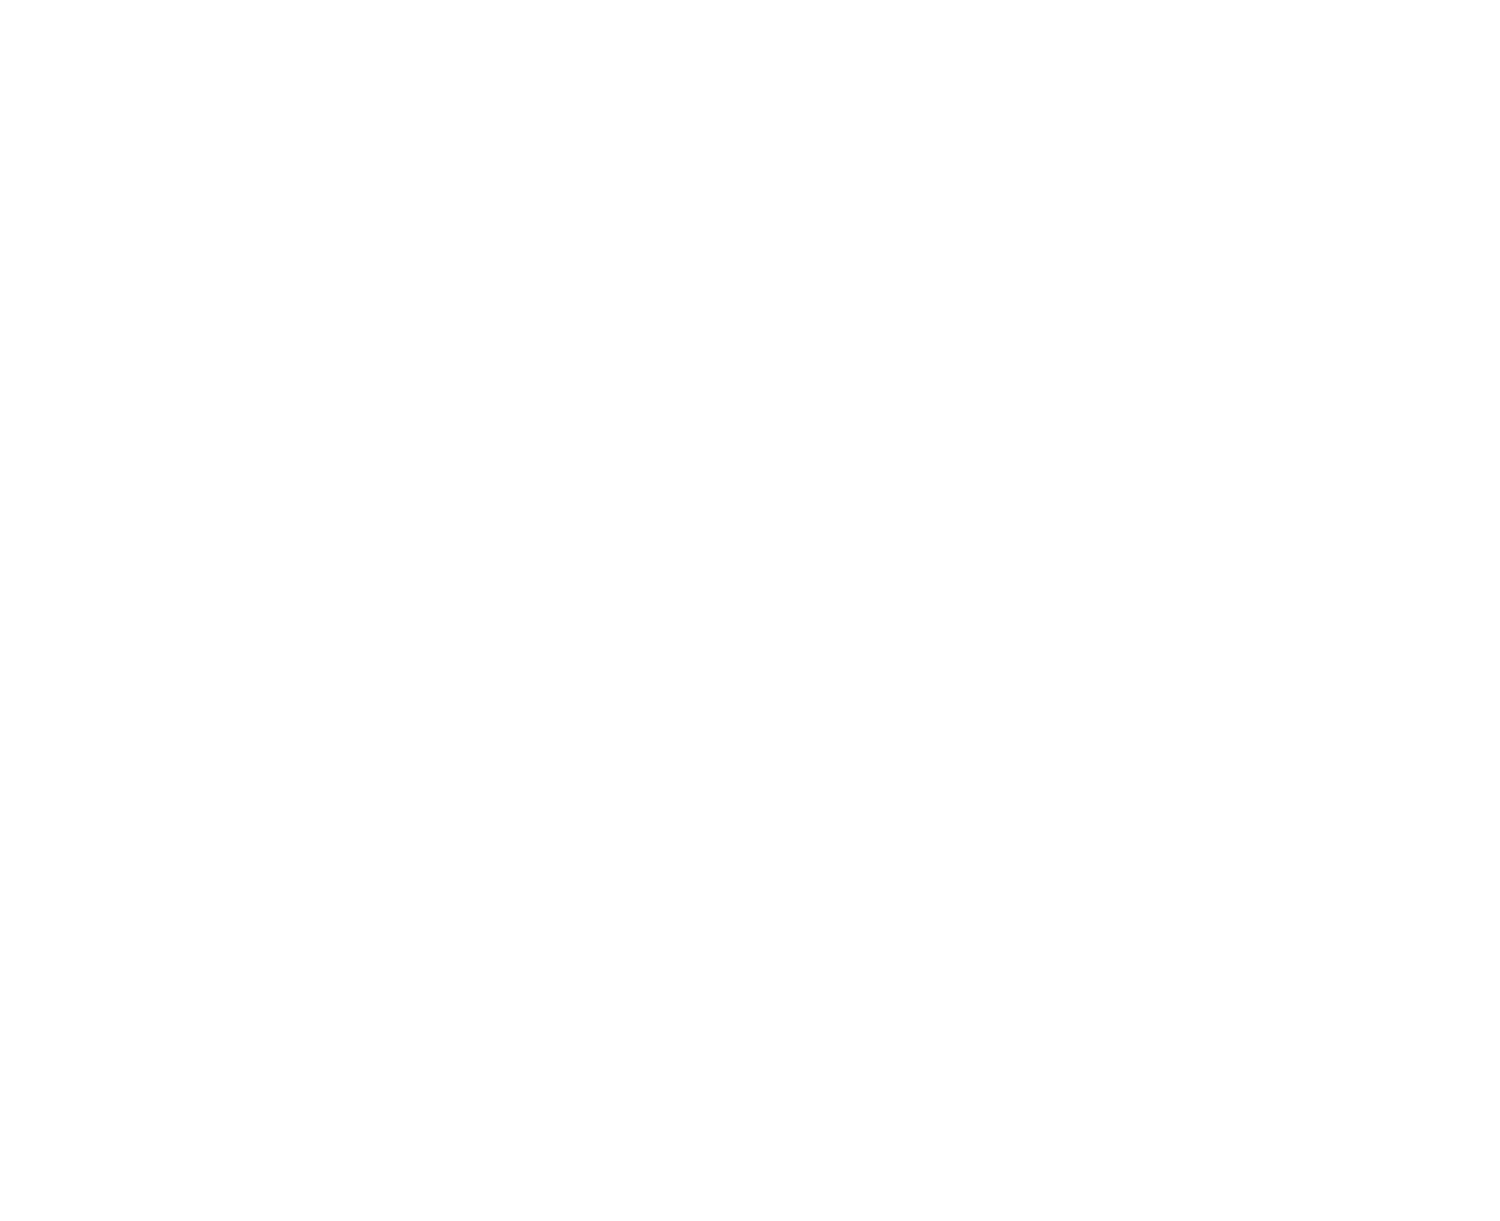 Steady Eddys